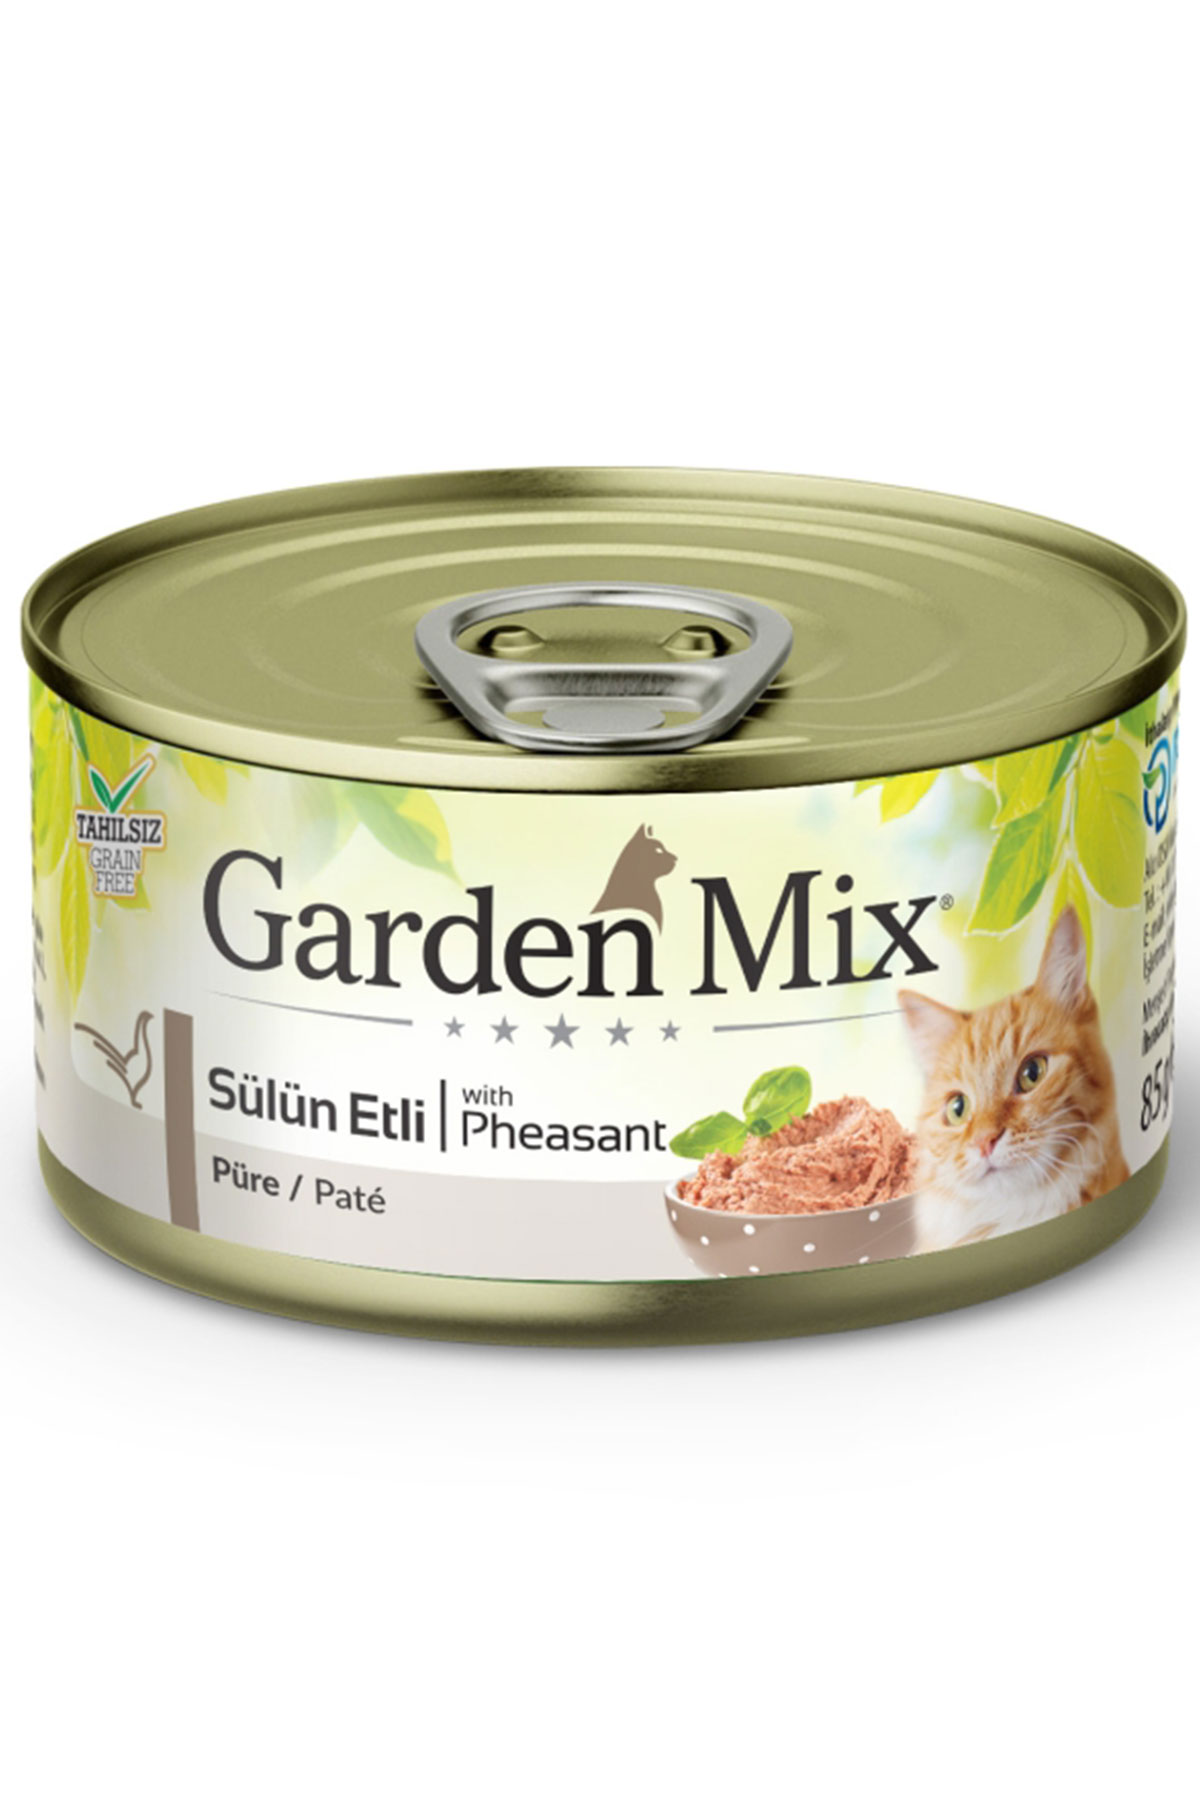 Garden Mix Kıyılmış Sülün Etli Tahılsız Yetişkin Kedi Konservesi 85gr